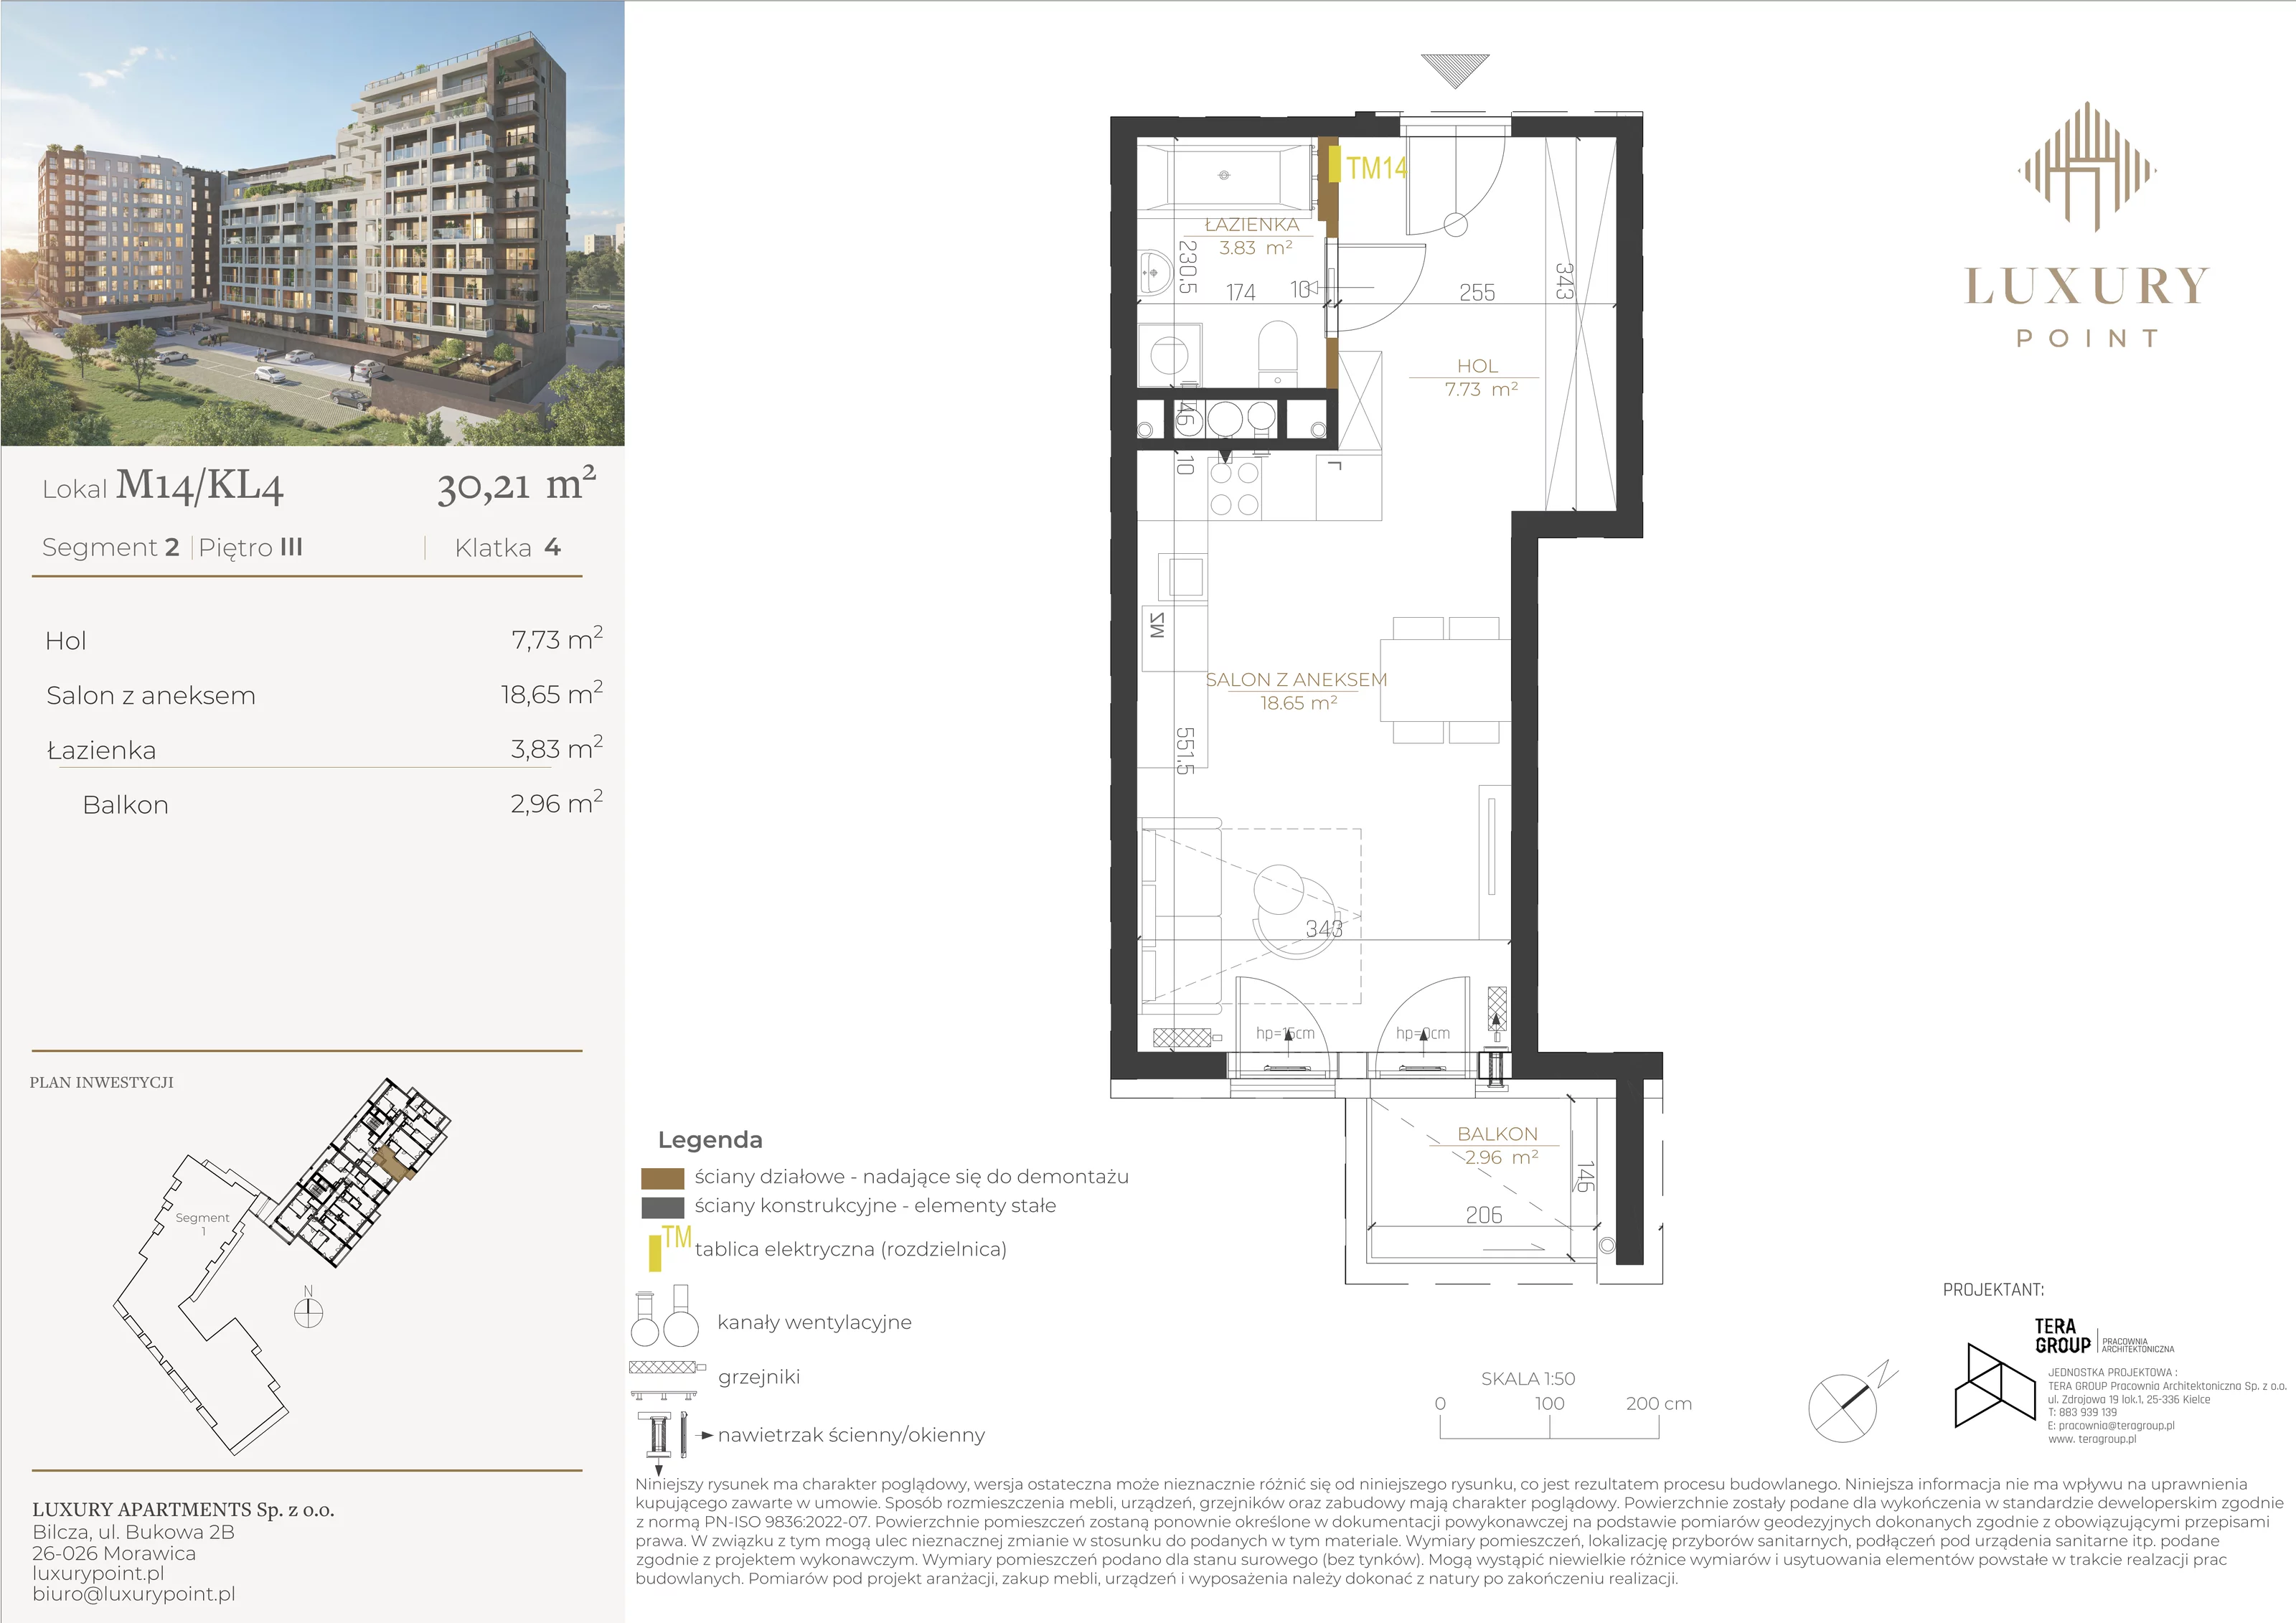 Mieszkanie 30,21 m², piętro 3, oferta nr M14/KL4, Luxury Point, Kielce, Al. Solidarności